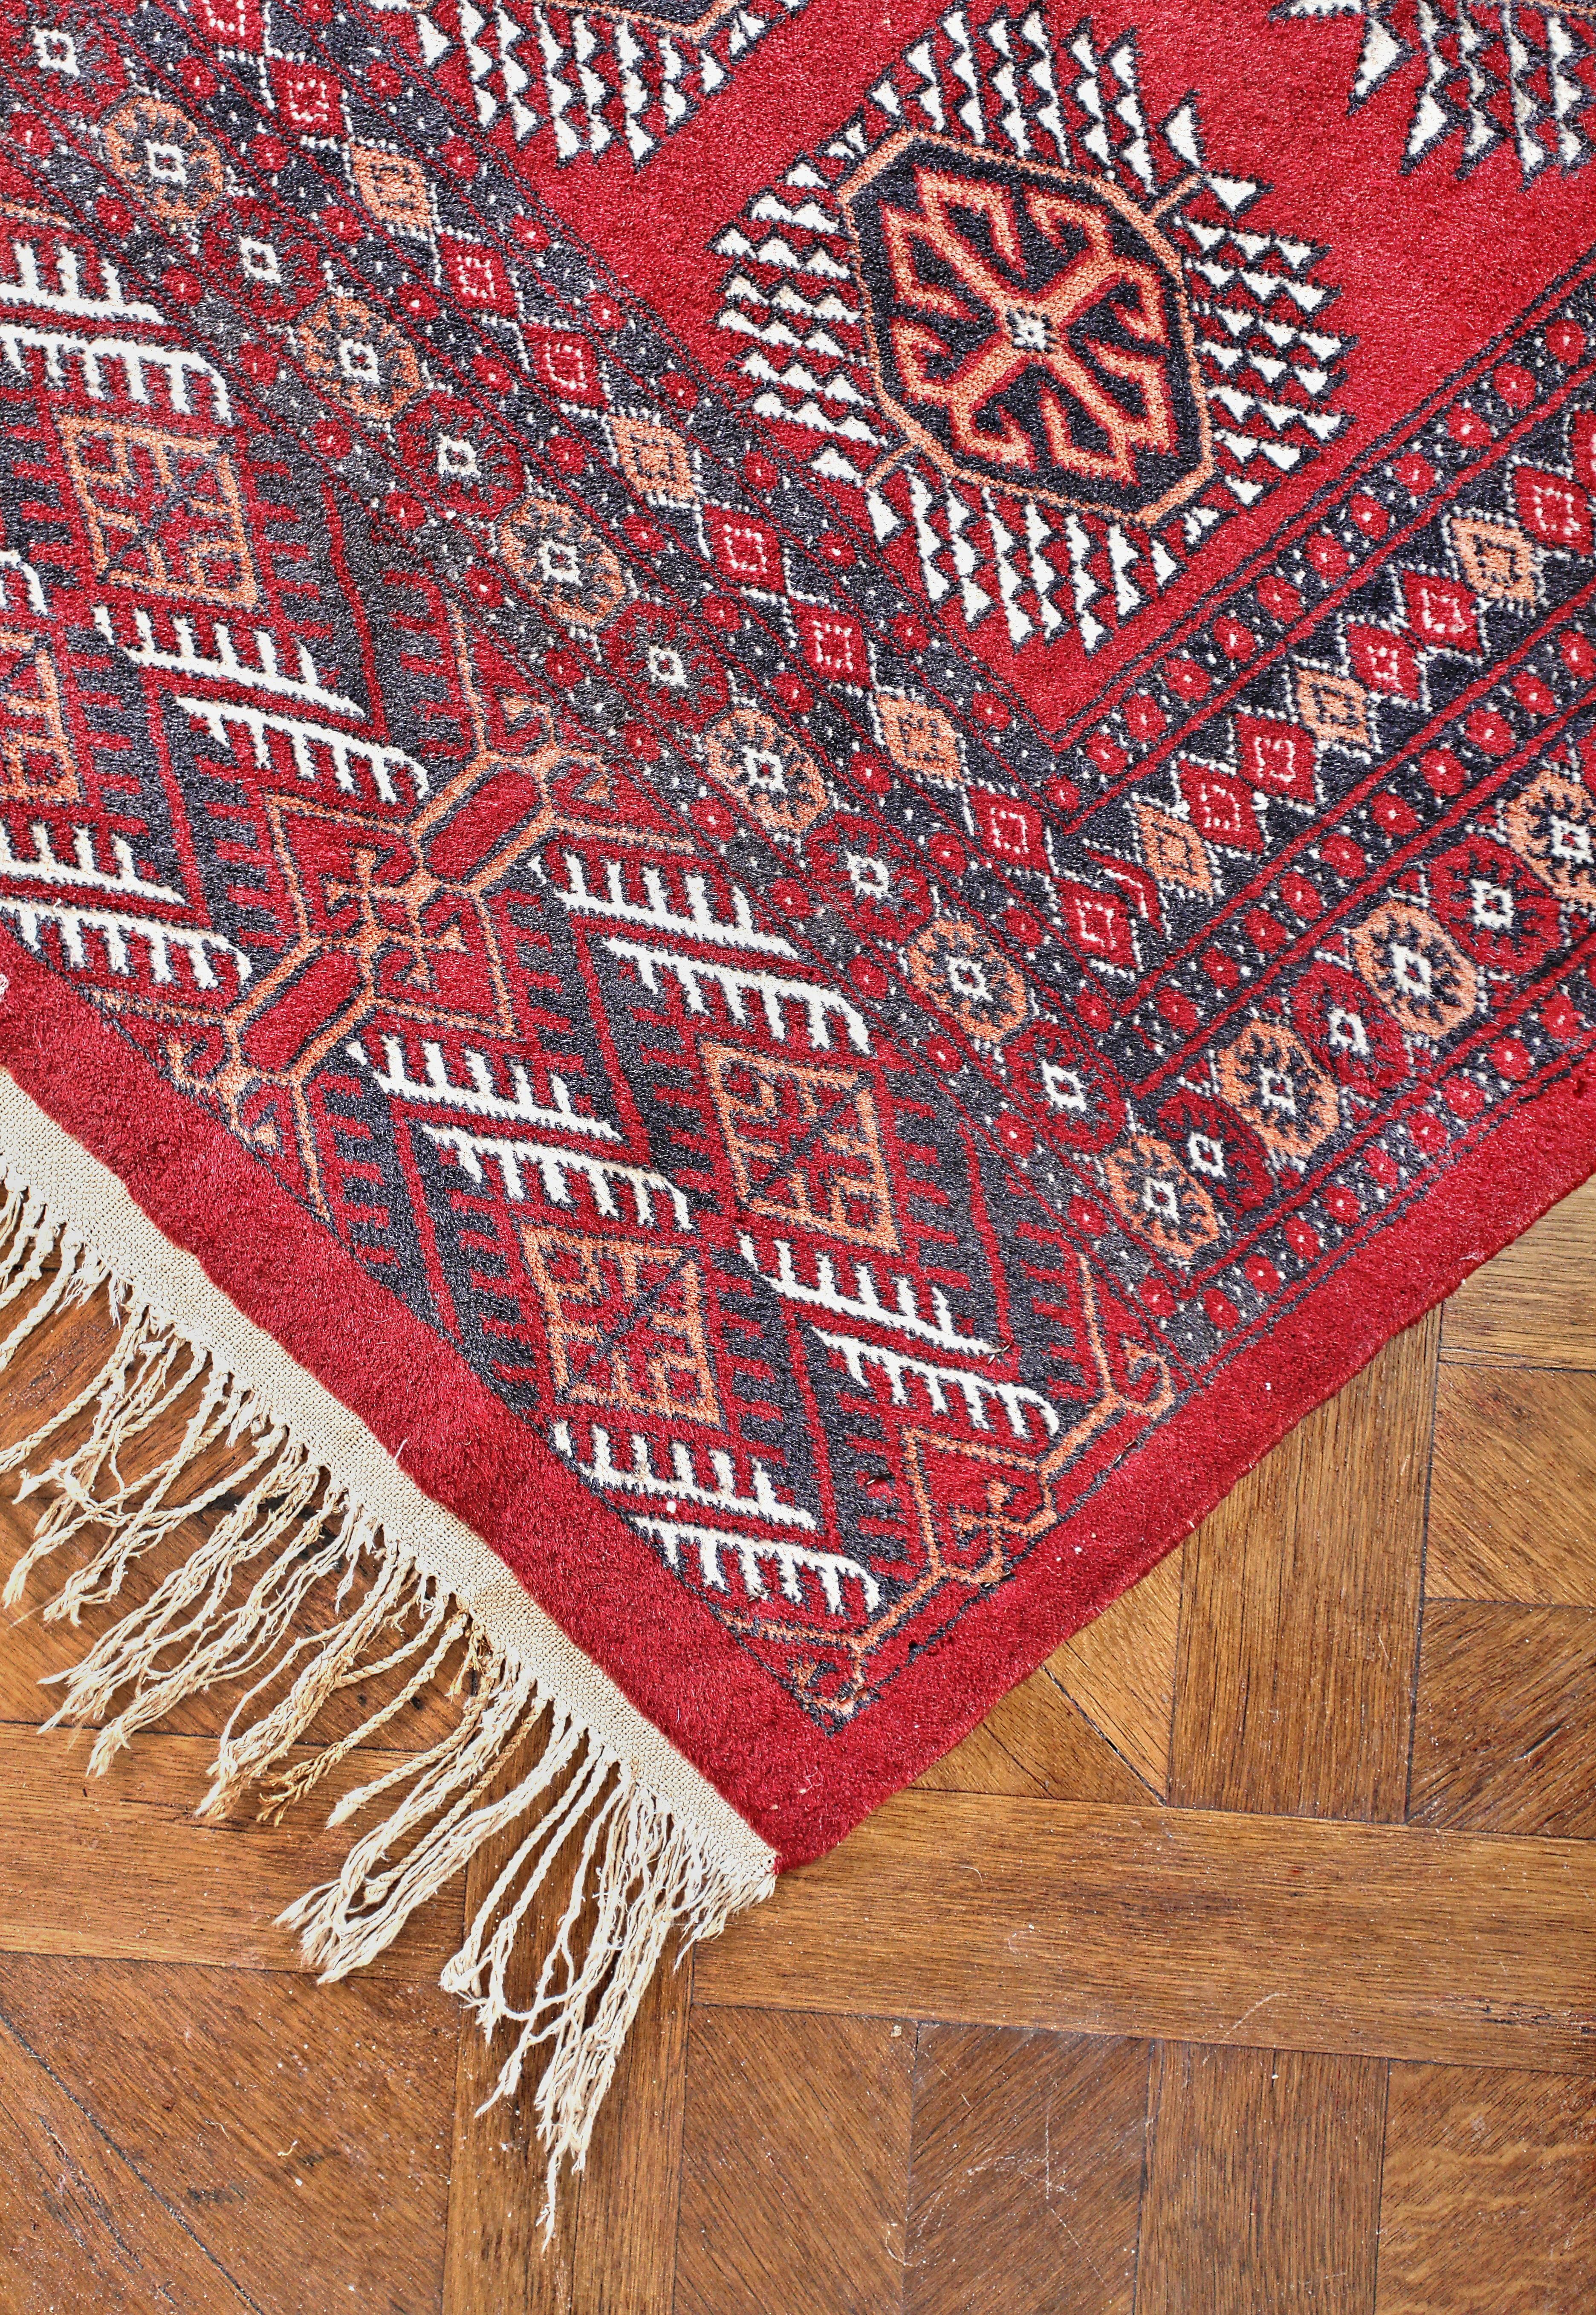 Großer orientalischer Teppich aus Pakistan 457 X 315 cm

Handgeknüpfter Teppich aus Pakistan mit Tekke-Mittelkugeln. Wolle auf einem Baumwollkettfaden. Hohe Bindungsdichte von ca. 360.000 Knoten pro m2. Zustand: gebraucht, sehr gut. Provenienz: